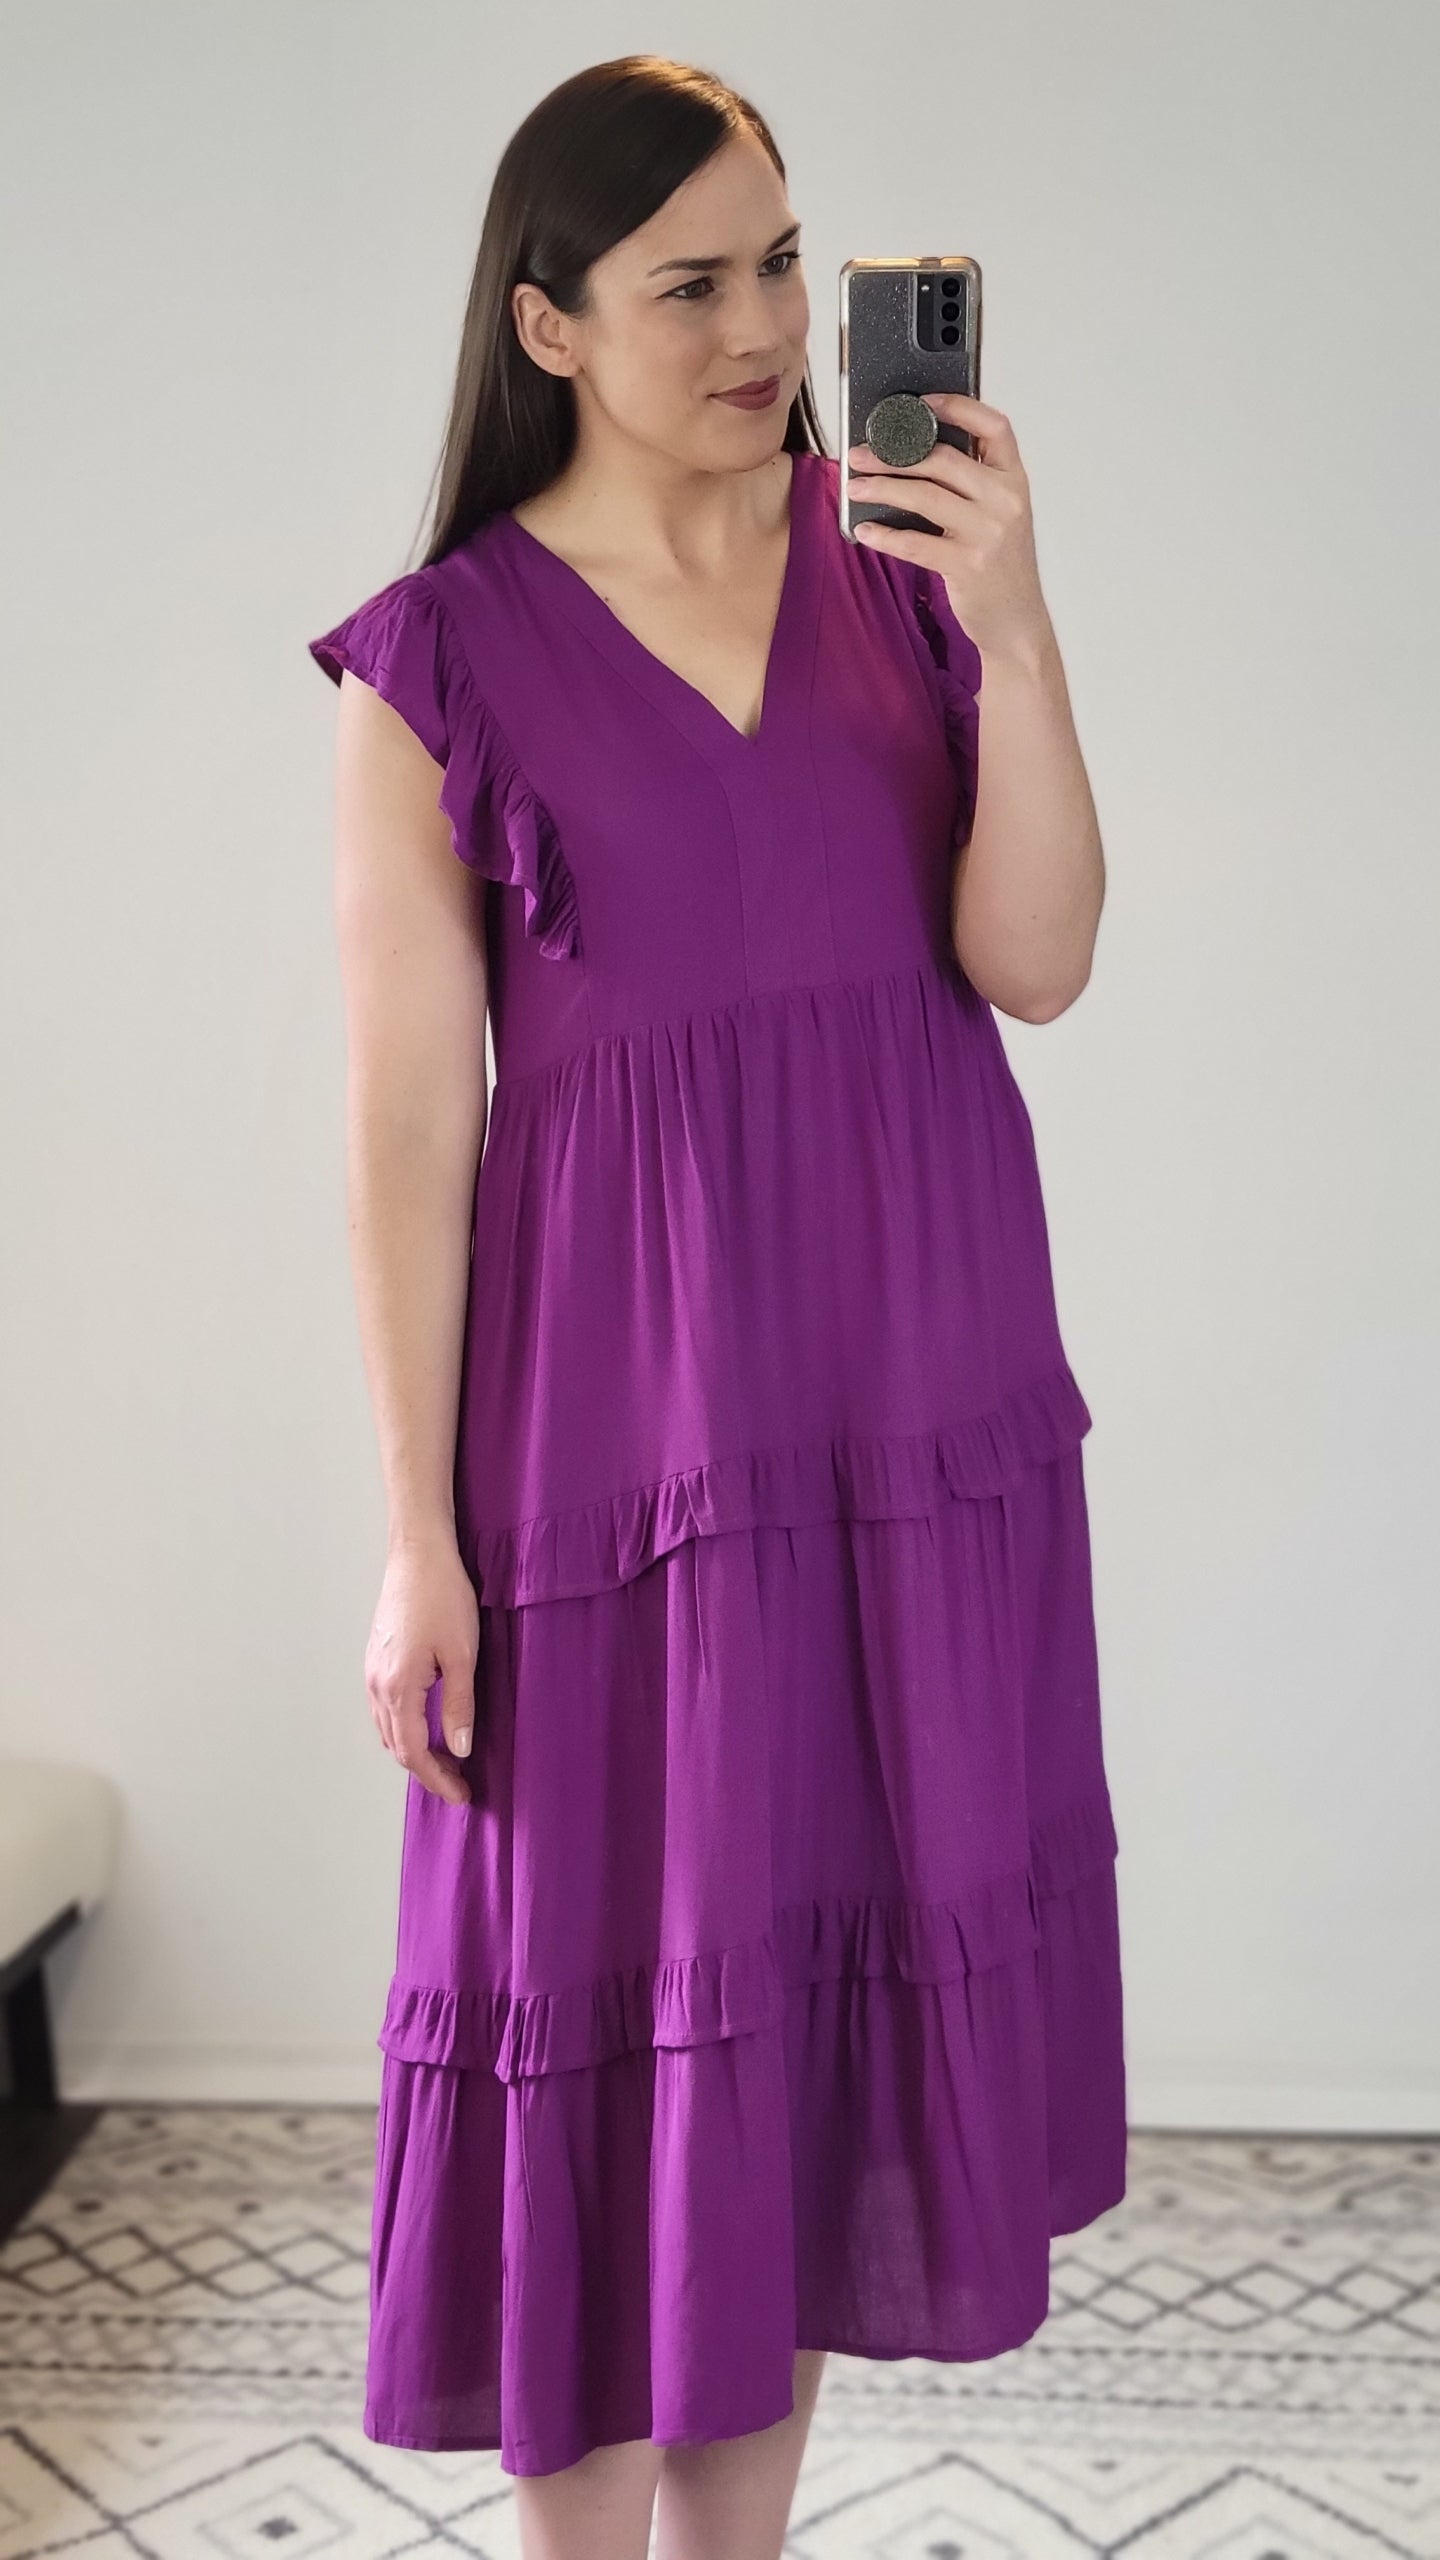 Violet Midi Dress with Pockets "Violet" (S)